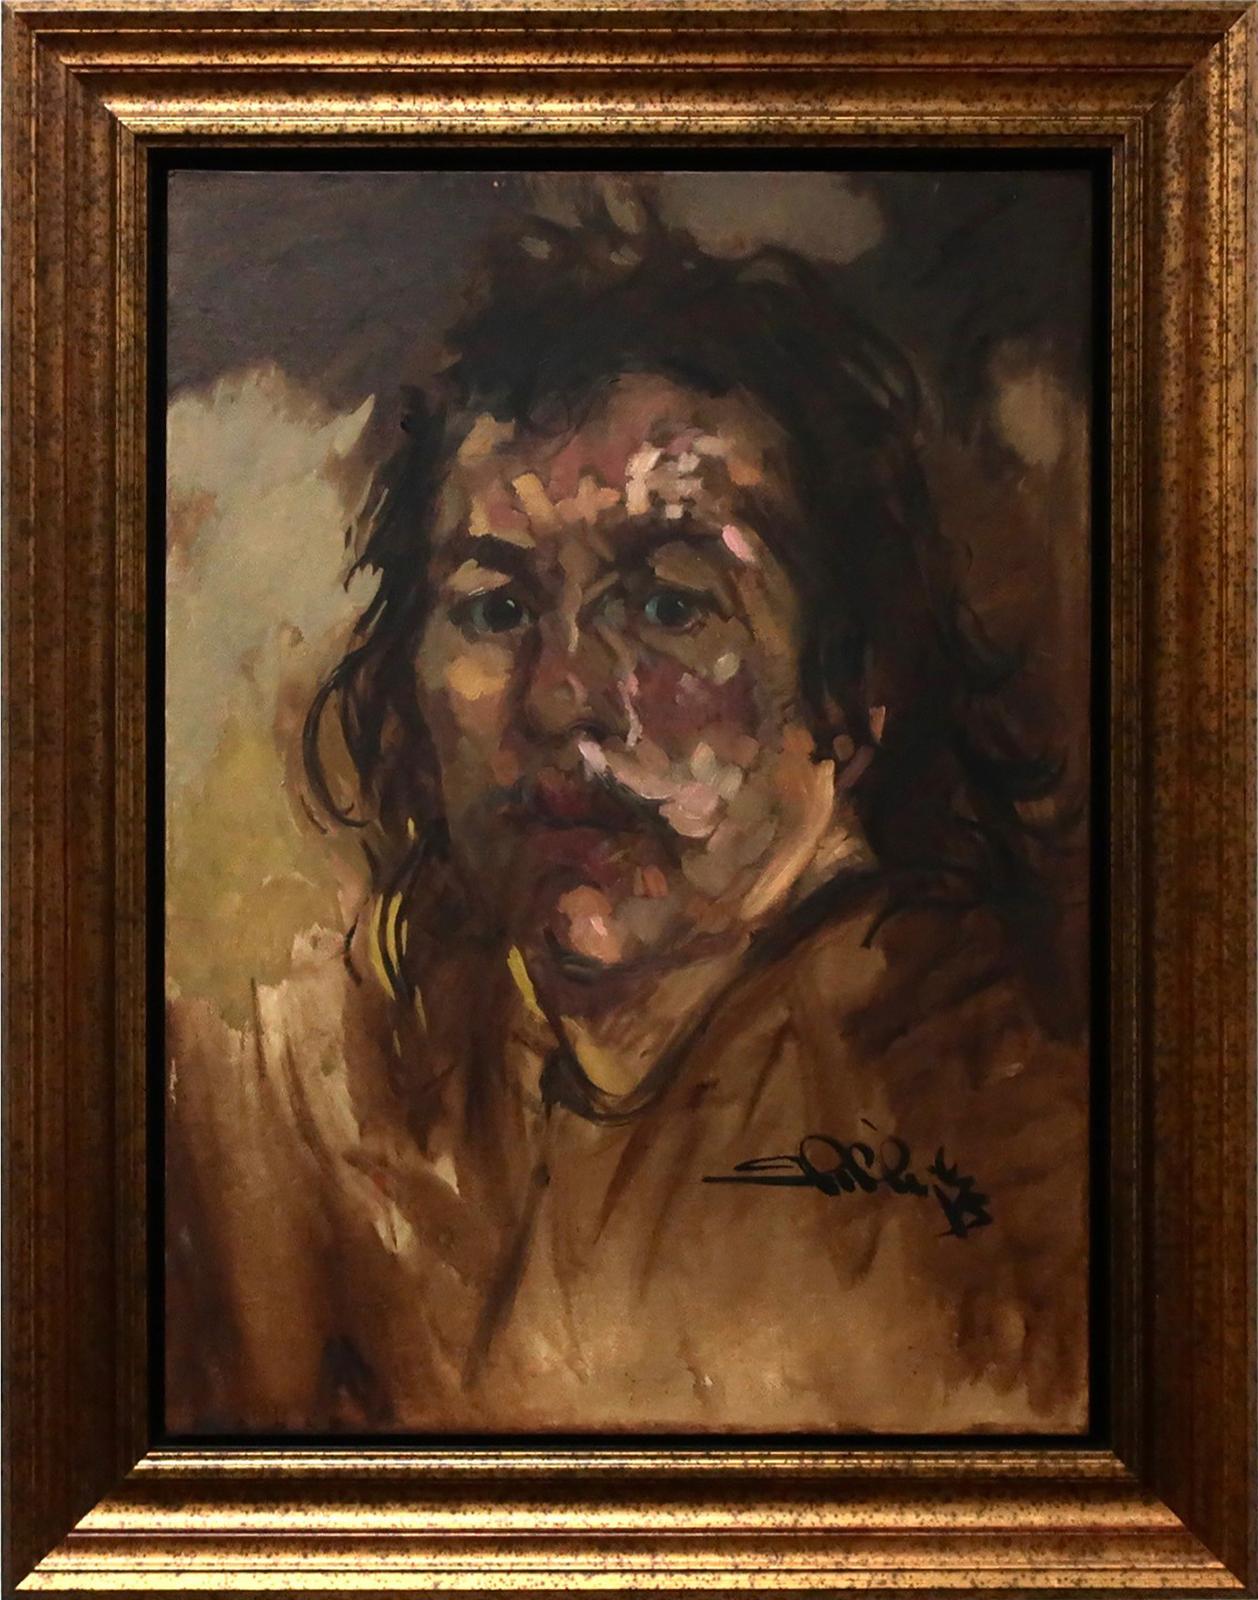 Arthur Shilling (1941-1986) - Self-Portrait